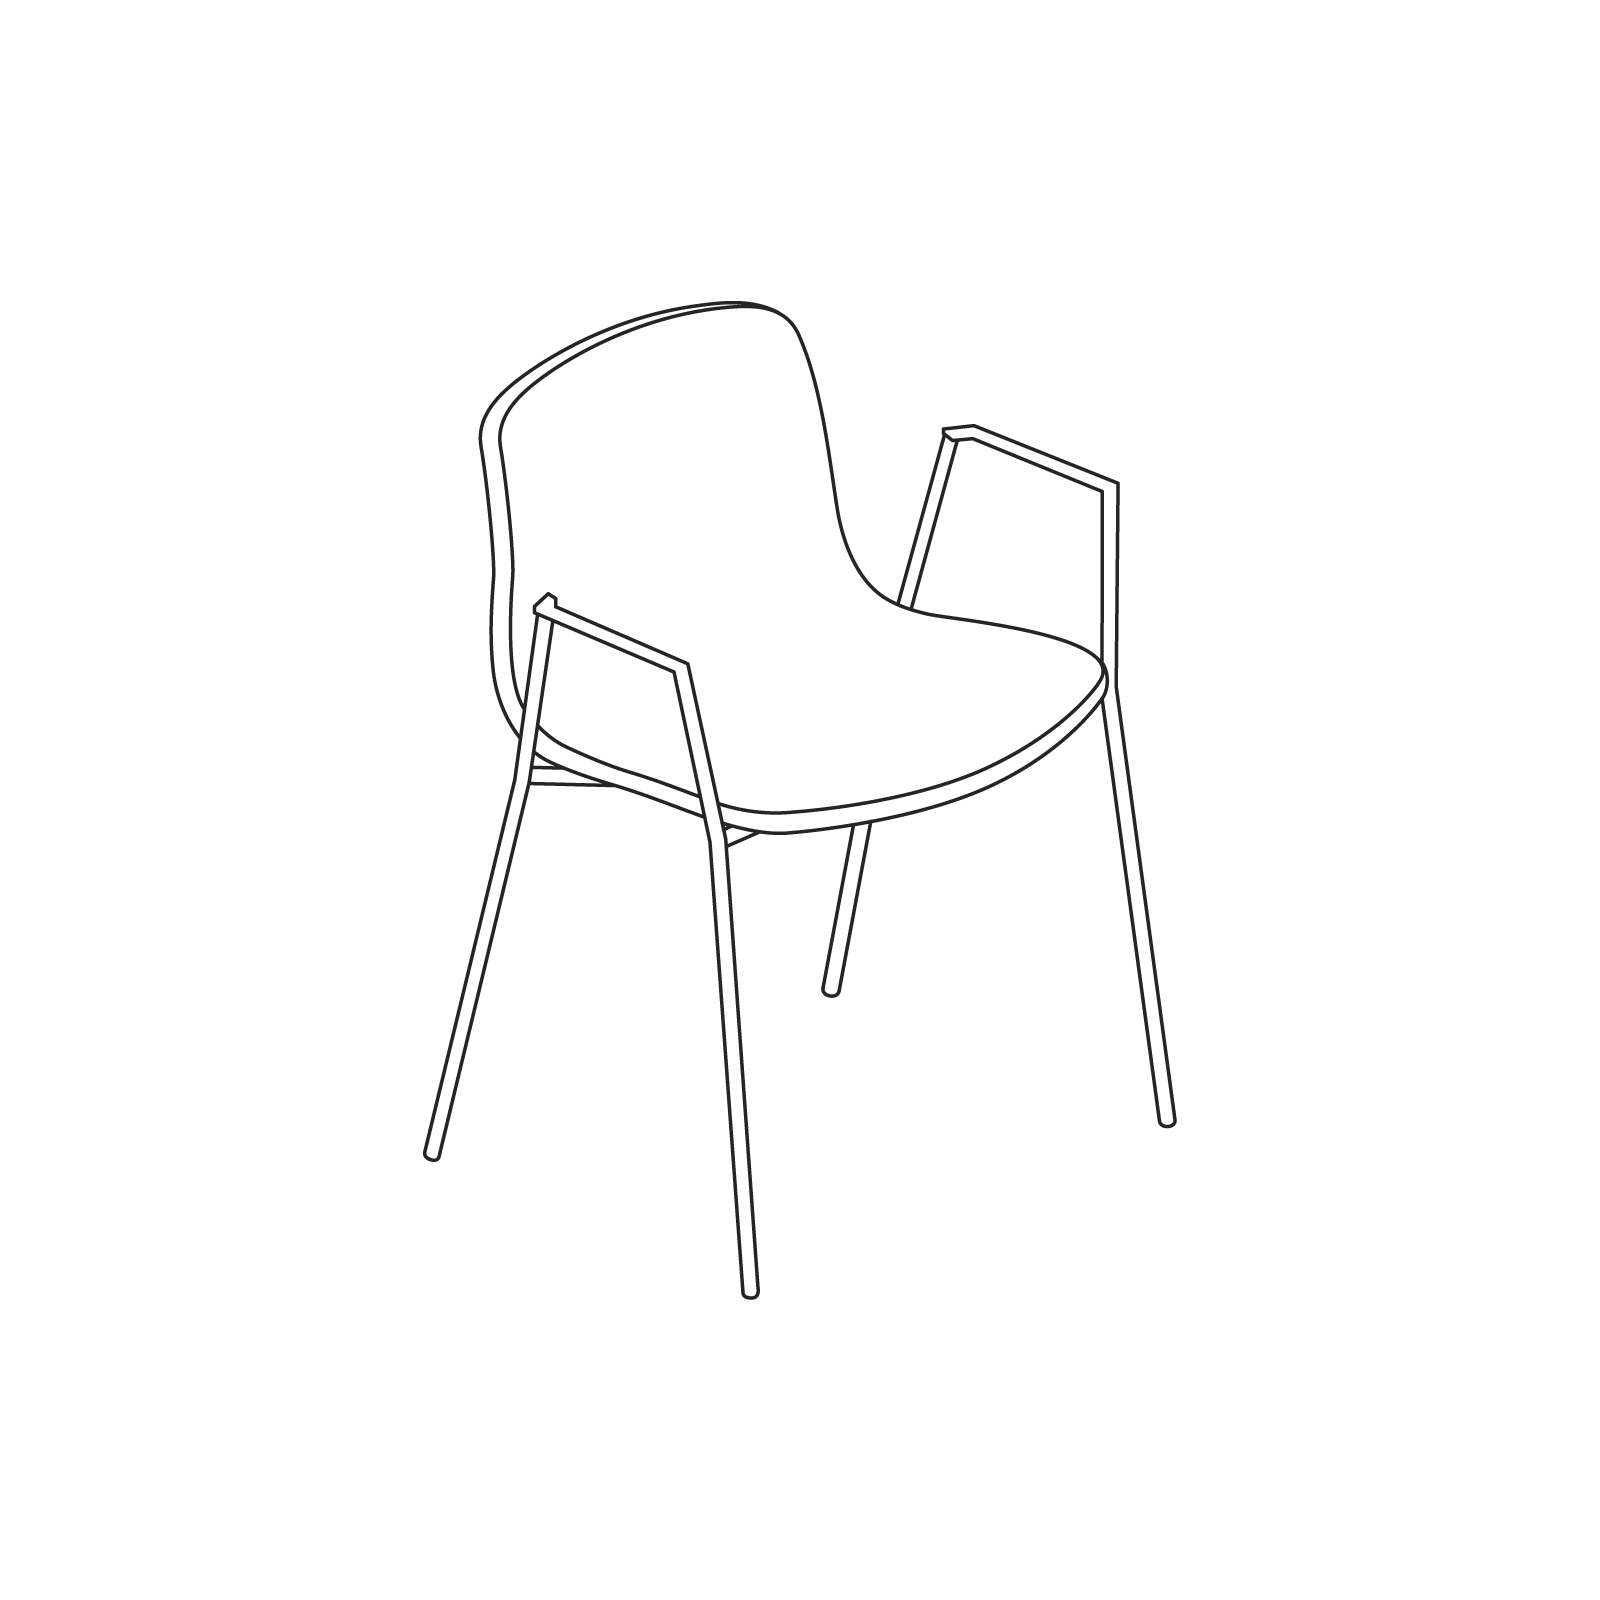 Um desenho de linha - About A Chair–Com braços–Base empilhável em metal (AAC18, AAC19)